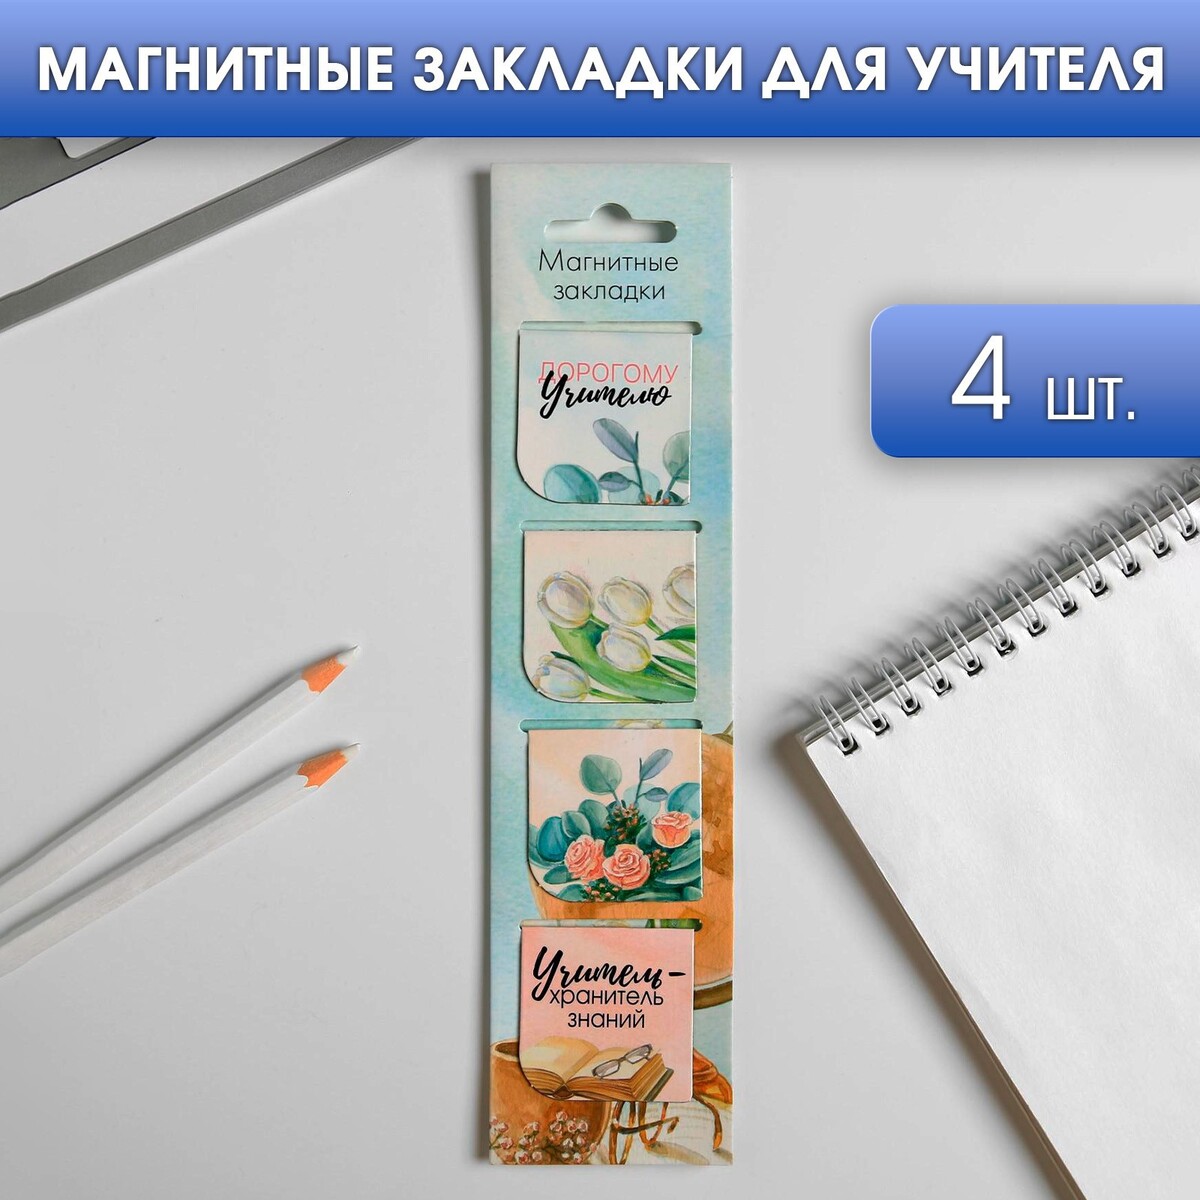 Магнитные закладки для книг в открытке магнитные закладки спб вам привет из петербурга кот и корюшка 3 шт